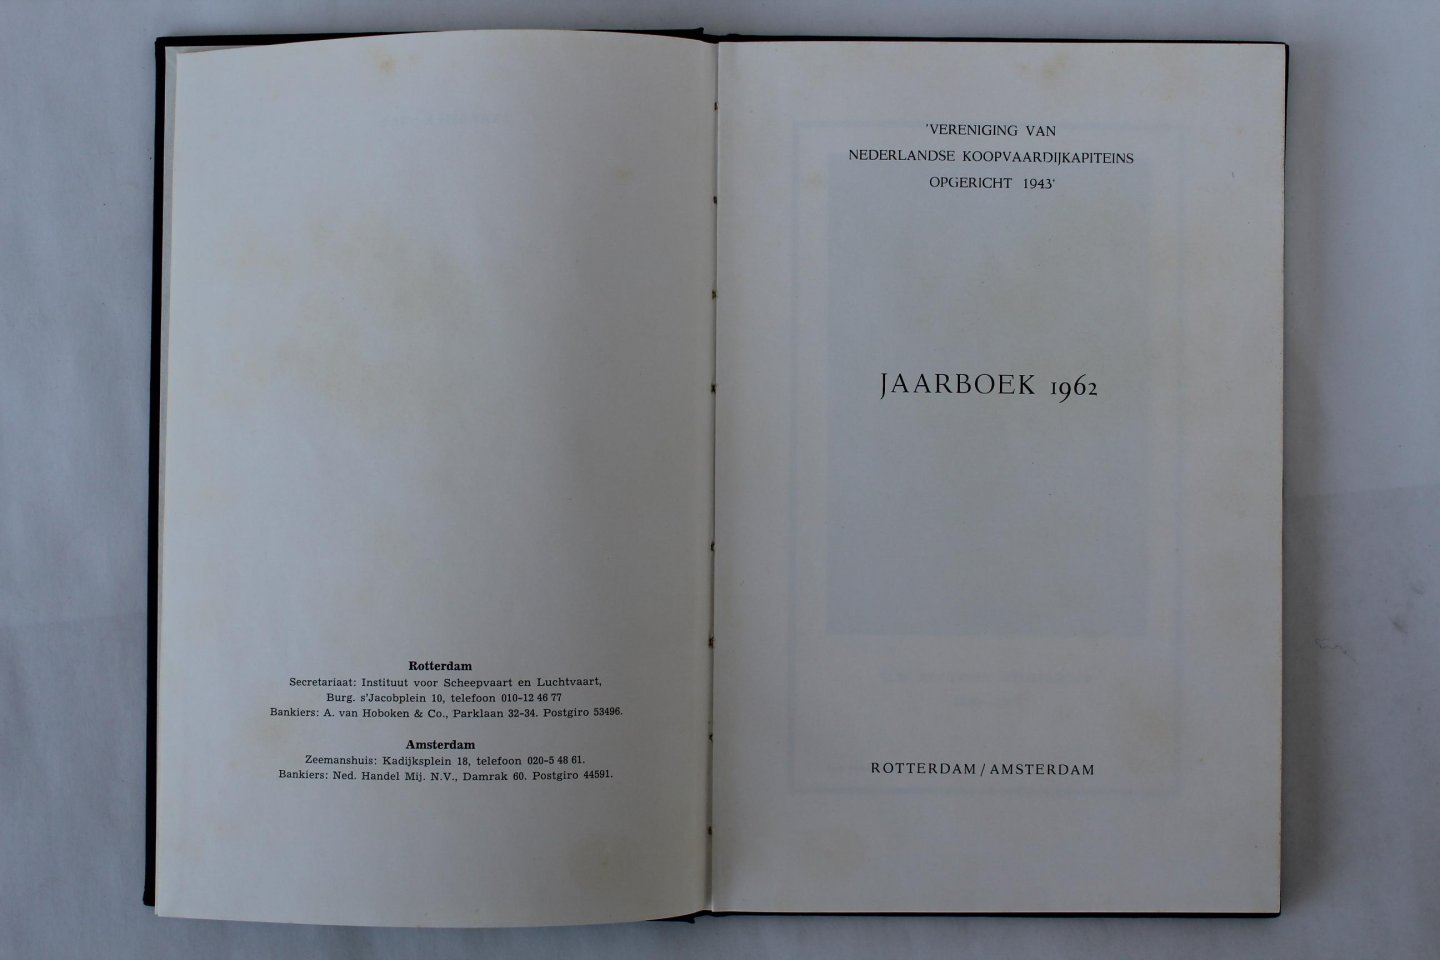 Diversen - Jaarboek 1962. Vereniging van Nederlandse koopvaardijkapteins (2 foto's)